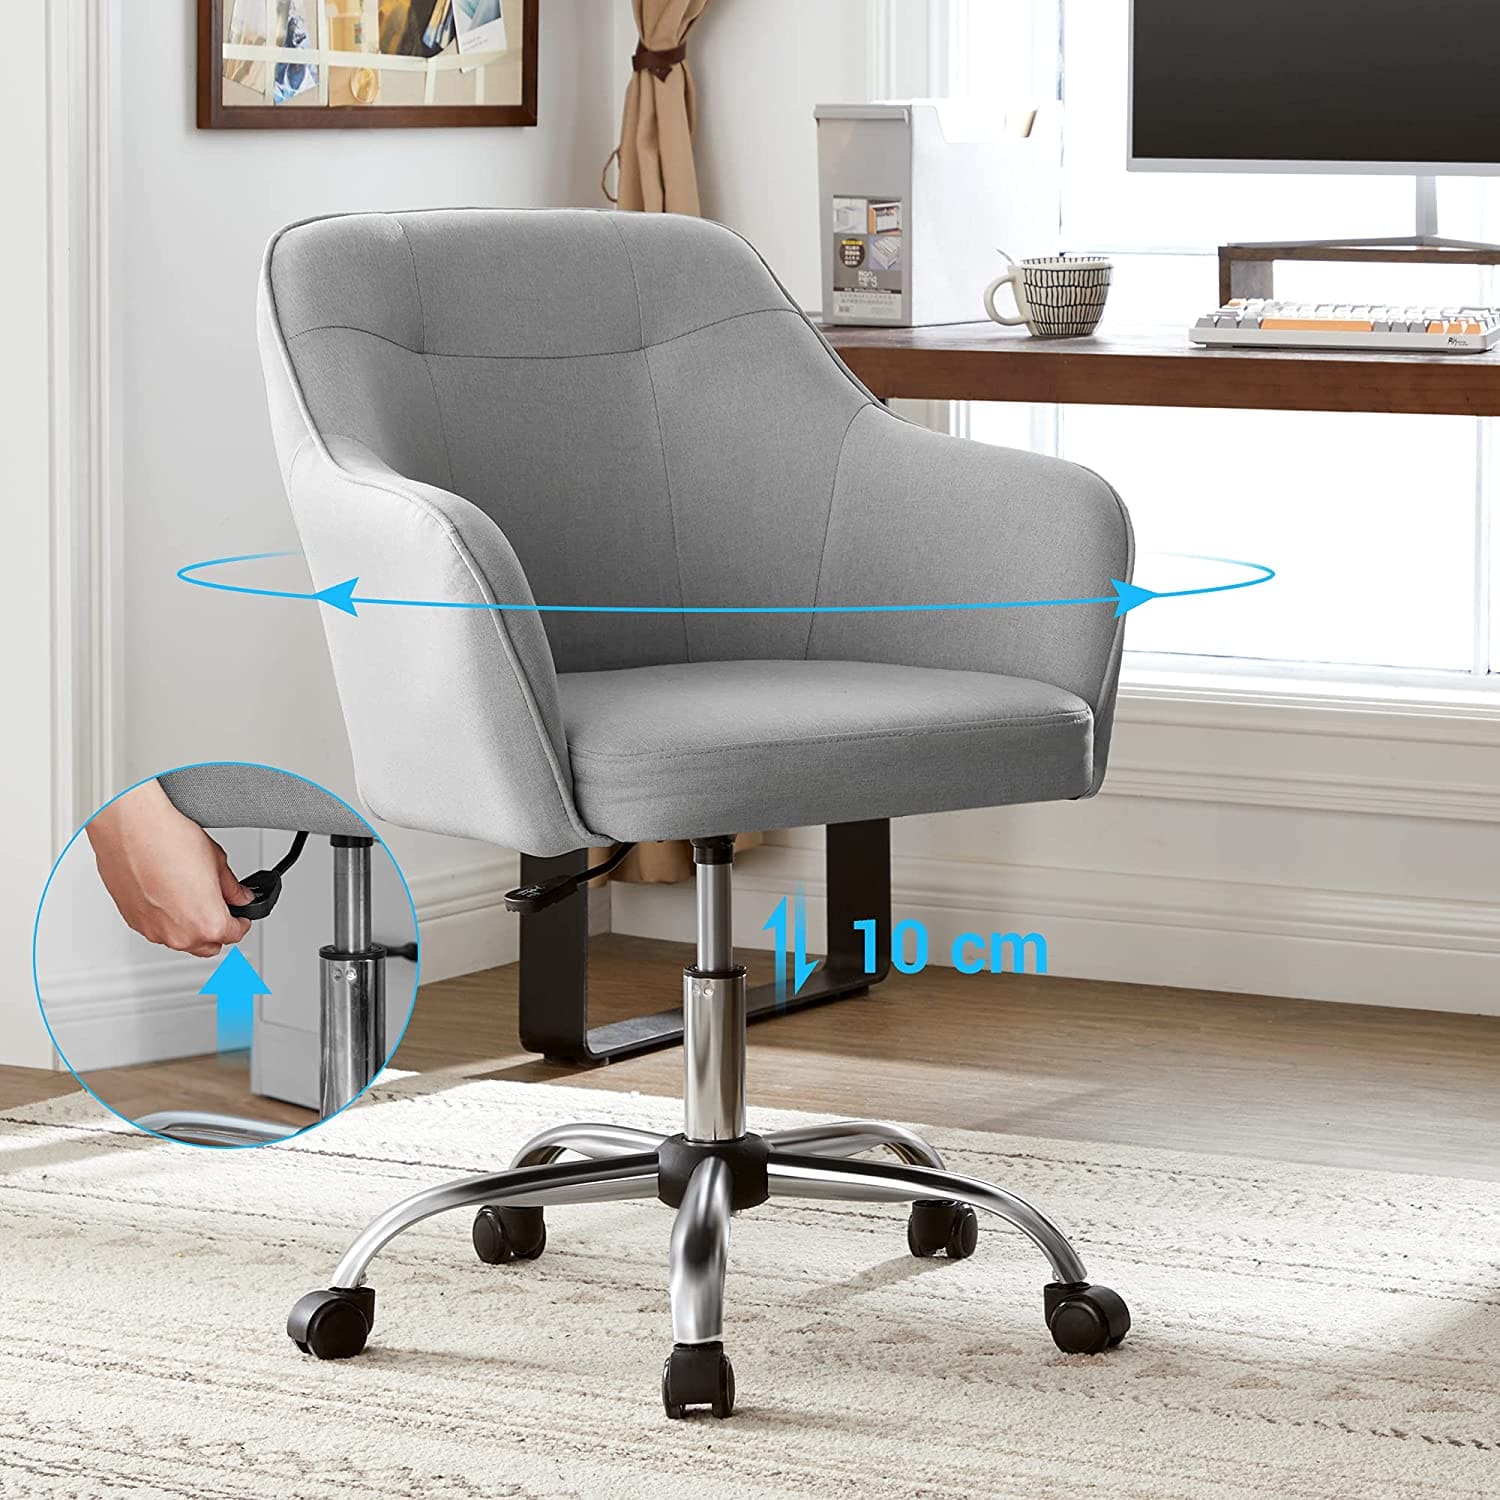 SONGMICS Chaise Complète - Une chaise réglable, confortable, idéale pour bureau, chambre ou salle d'étude